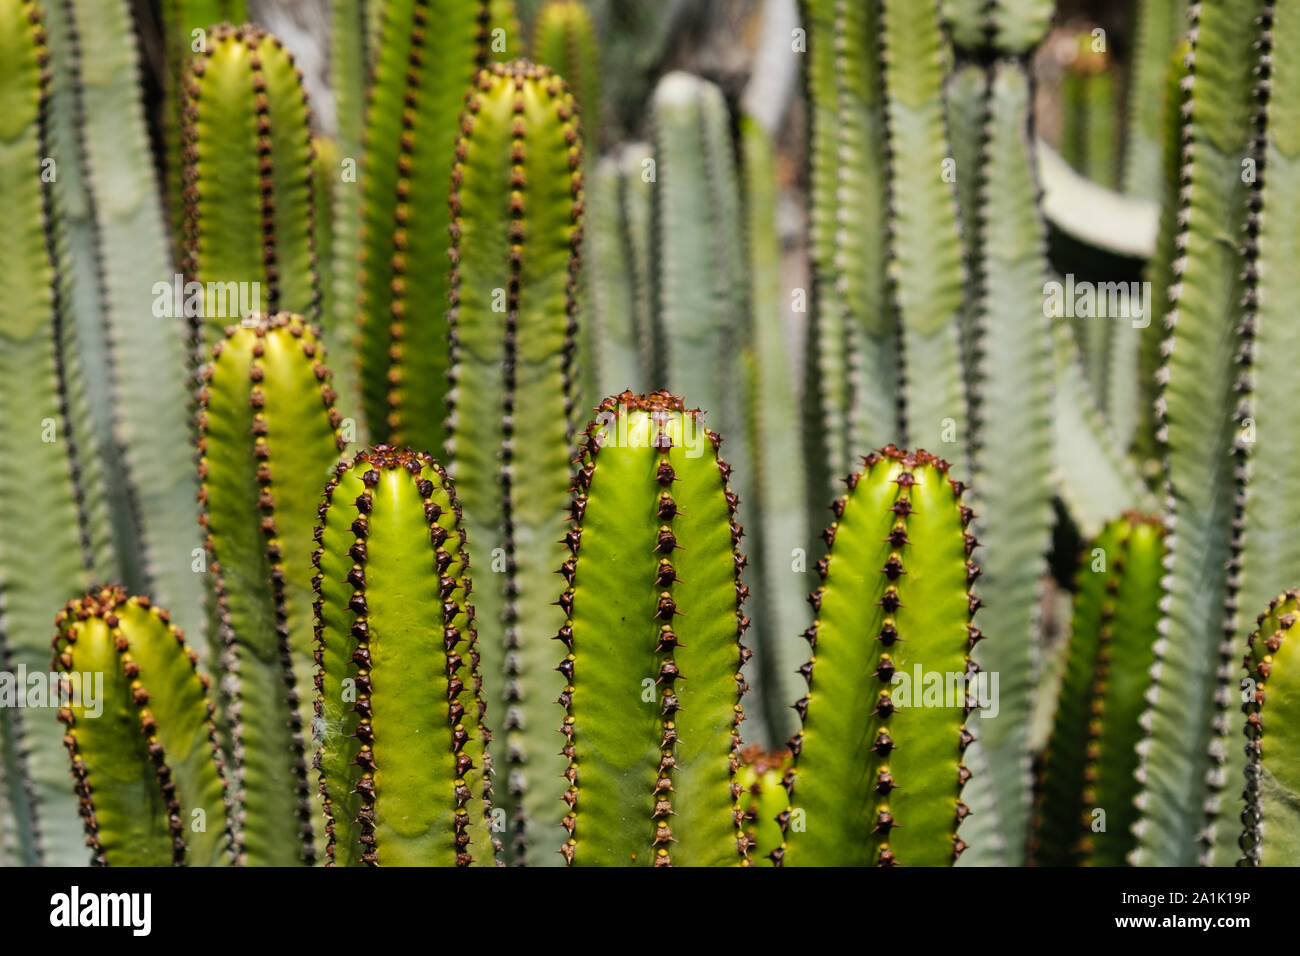 Piante di cactus dettaglio - impianto di cactus closeup - Euphorbia Ingens Foto Stock